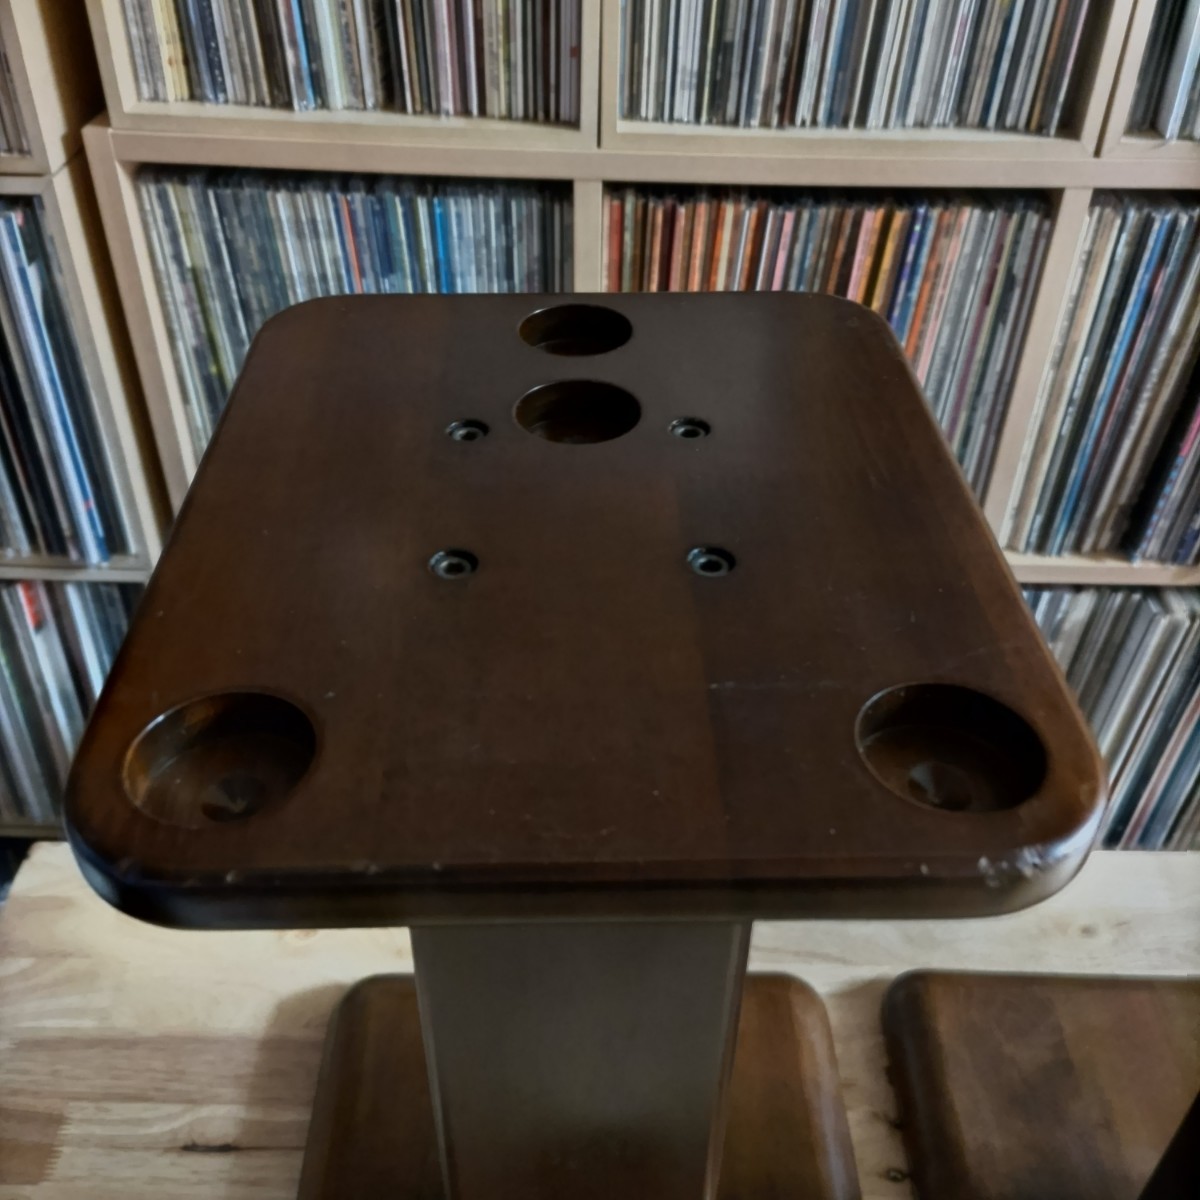  Yamamoto sound industrial arts speaker stand 2 piece set 